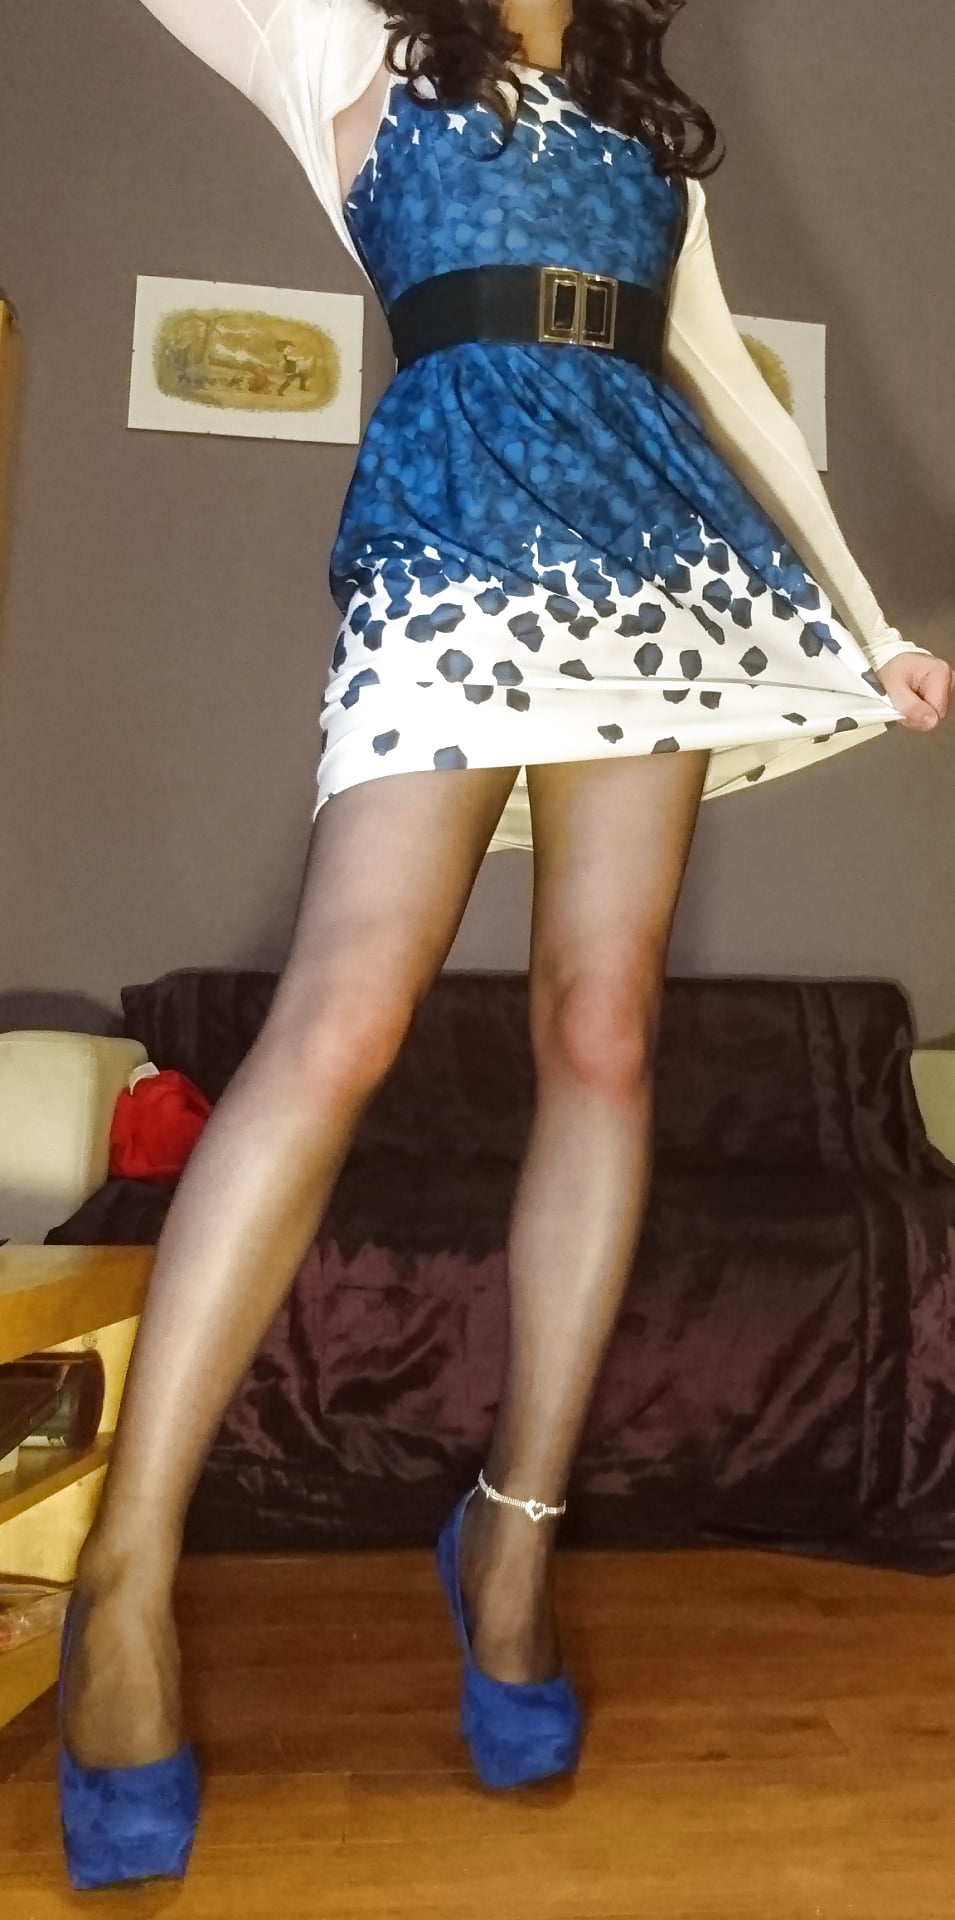 Marie Crossdresser blaues Kleid und durchsichtige Strumpfhosen
 #106699255